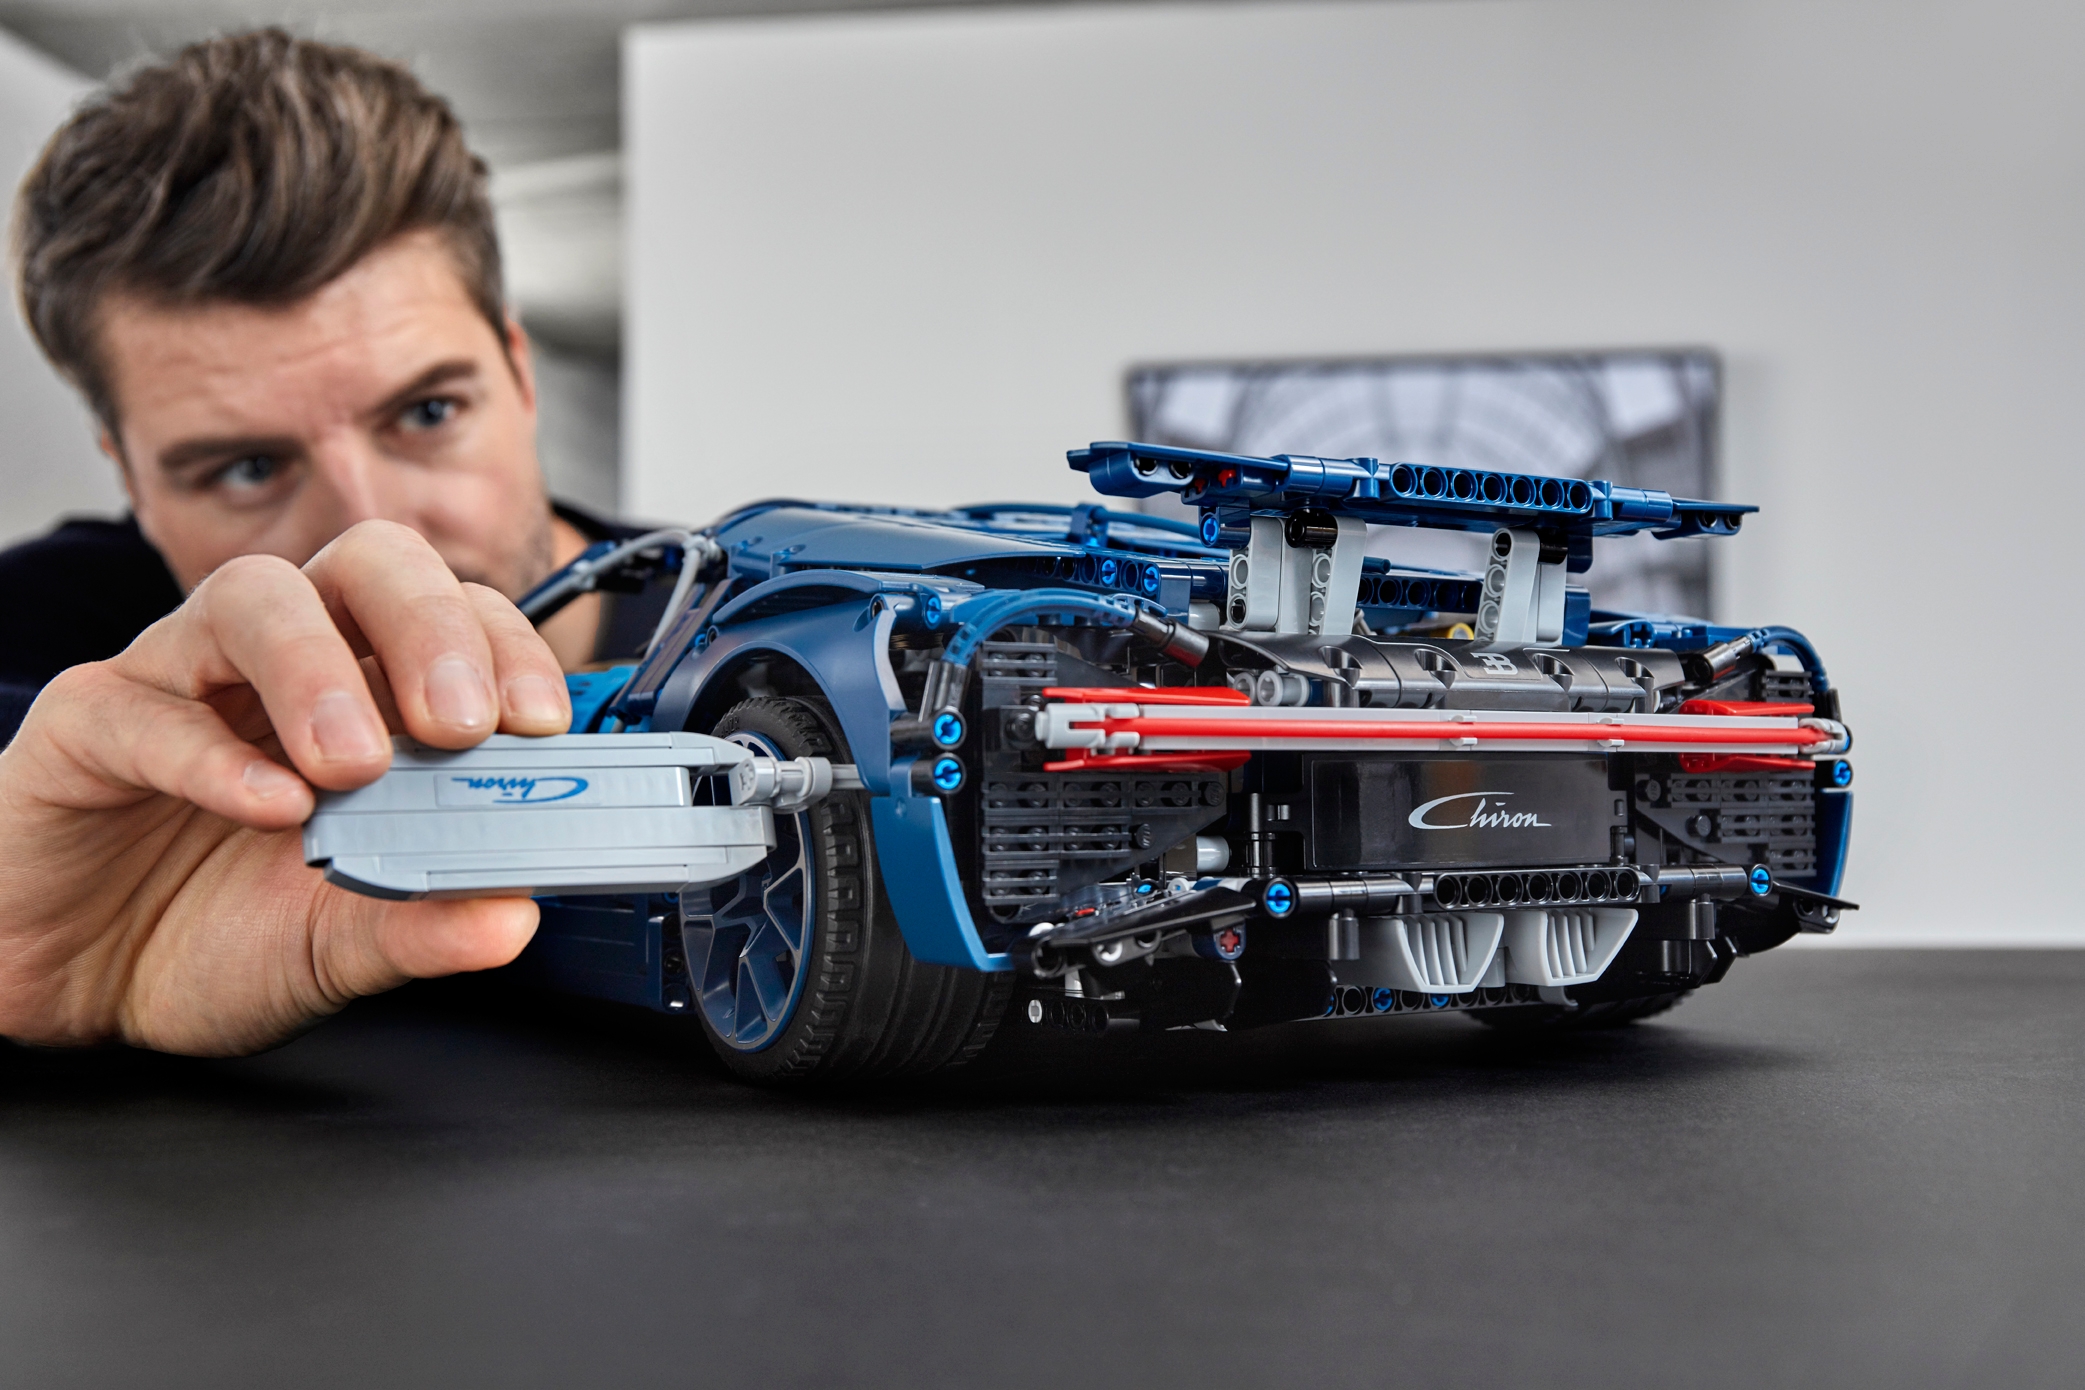 The new Lego Technic Bugatti Chiron has 3,599 pieces